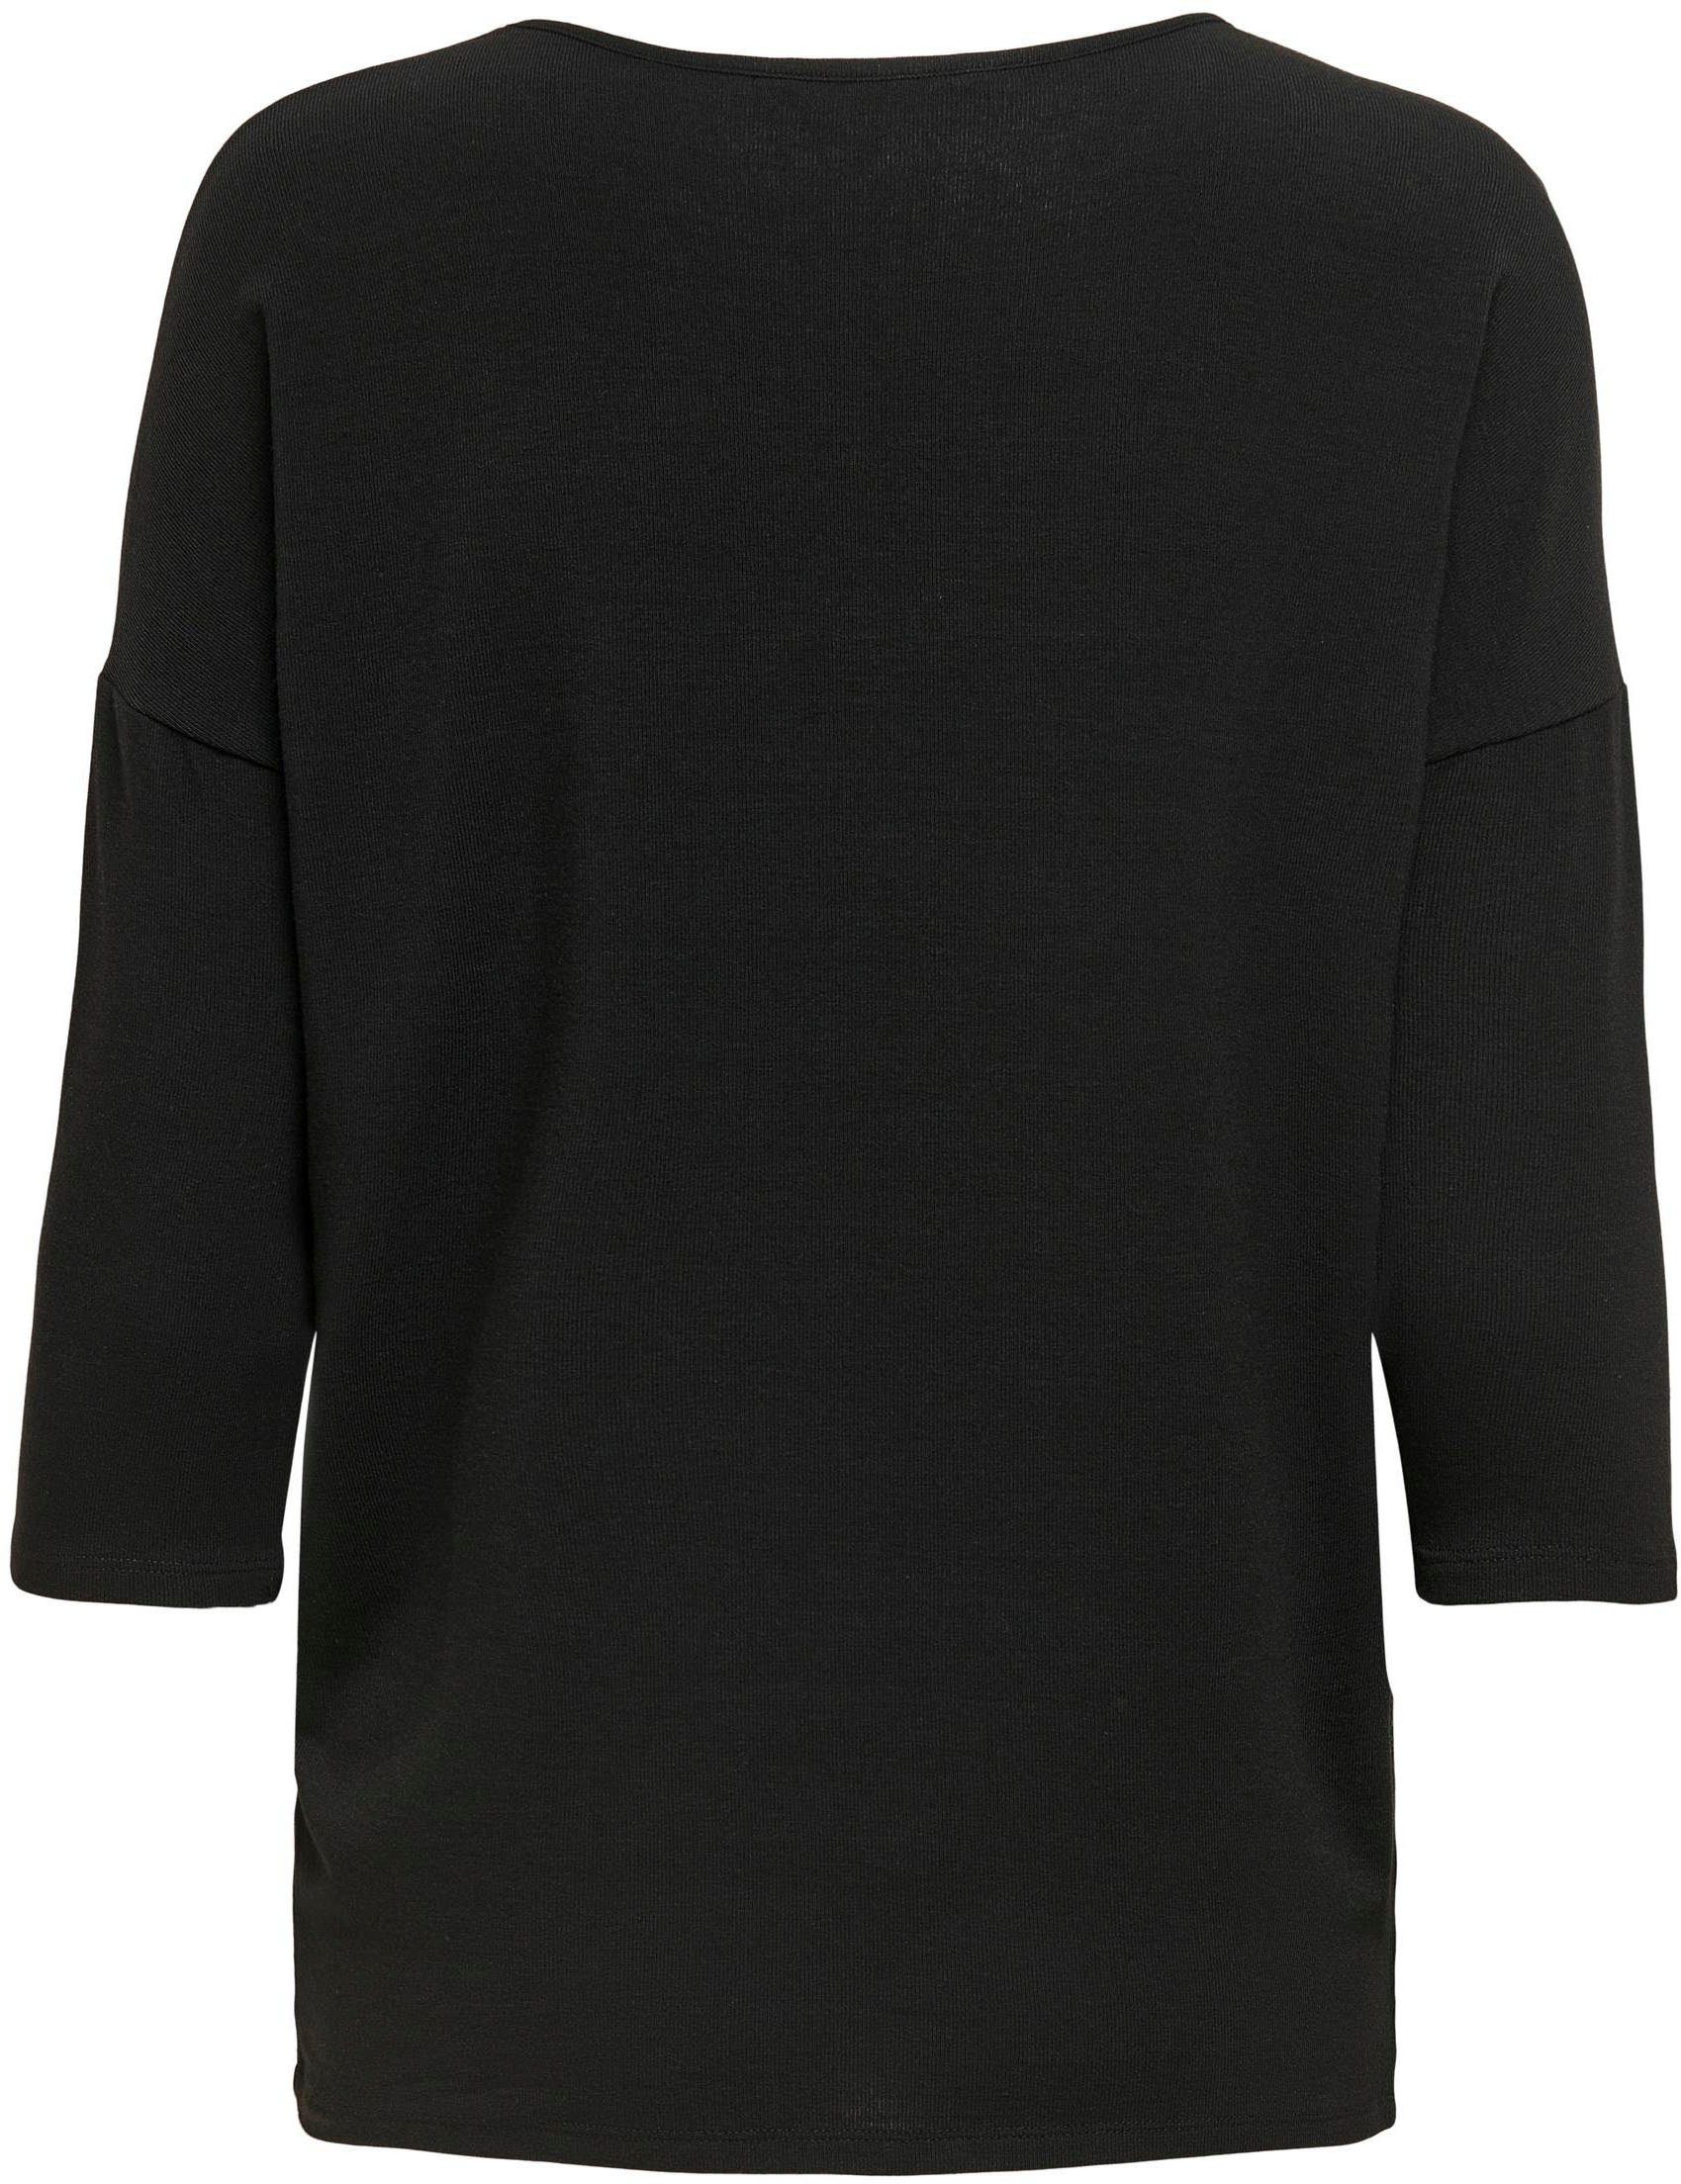 ONLY ONLGLAMOUR black 3/4-Arm-Shirt in Oversize-Form lässiger